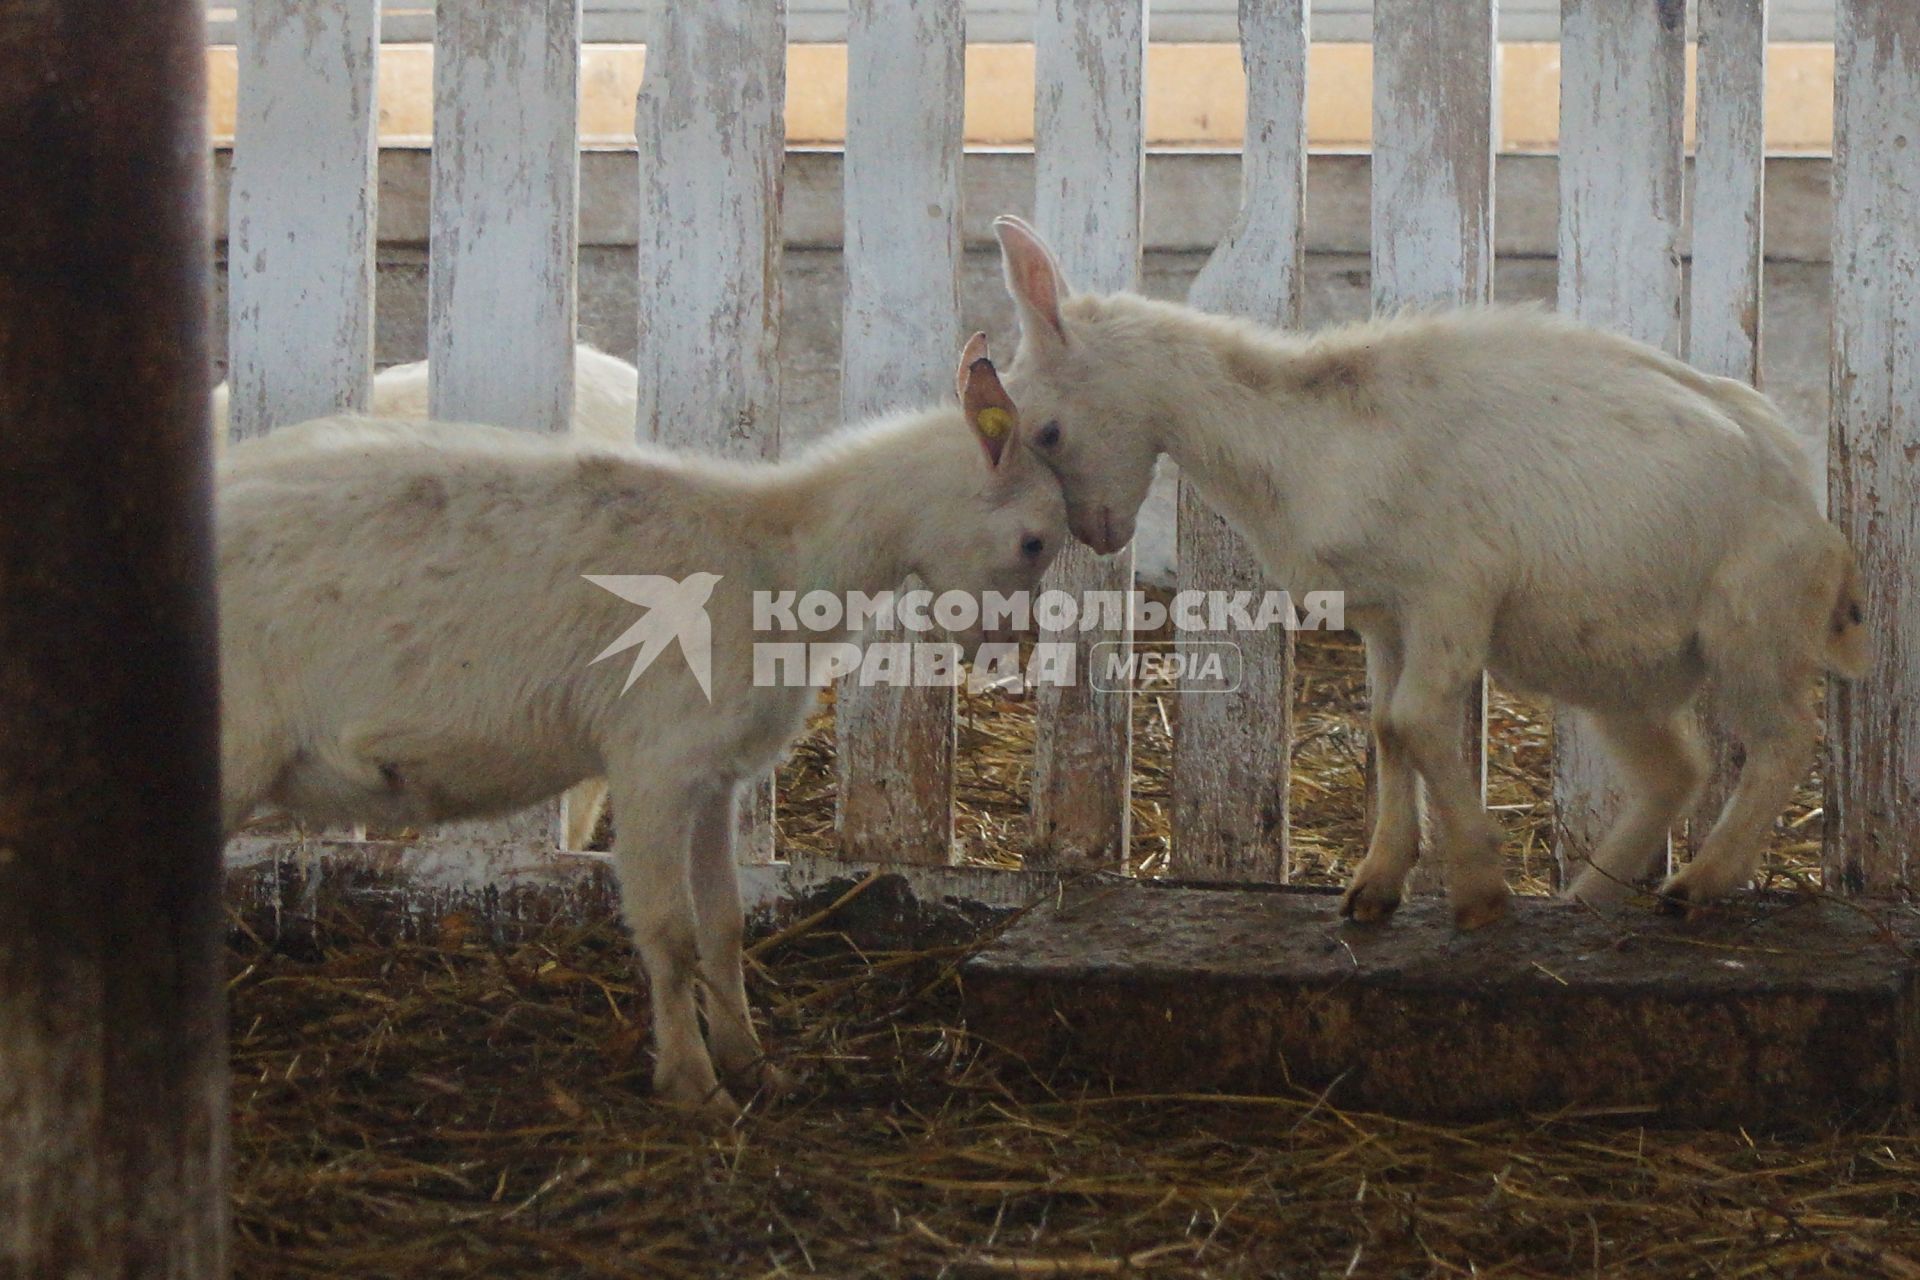 козлята бодаются в загоне, на сельхозпредприятии по выращиванию коз и производству козьего молока – научно-производственный кооператив «Ачитский»